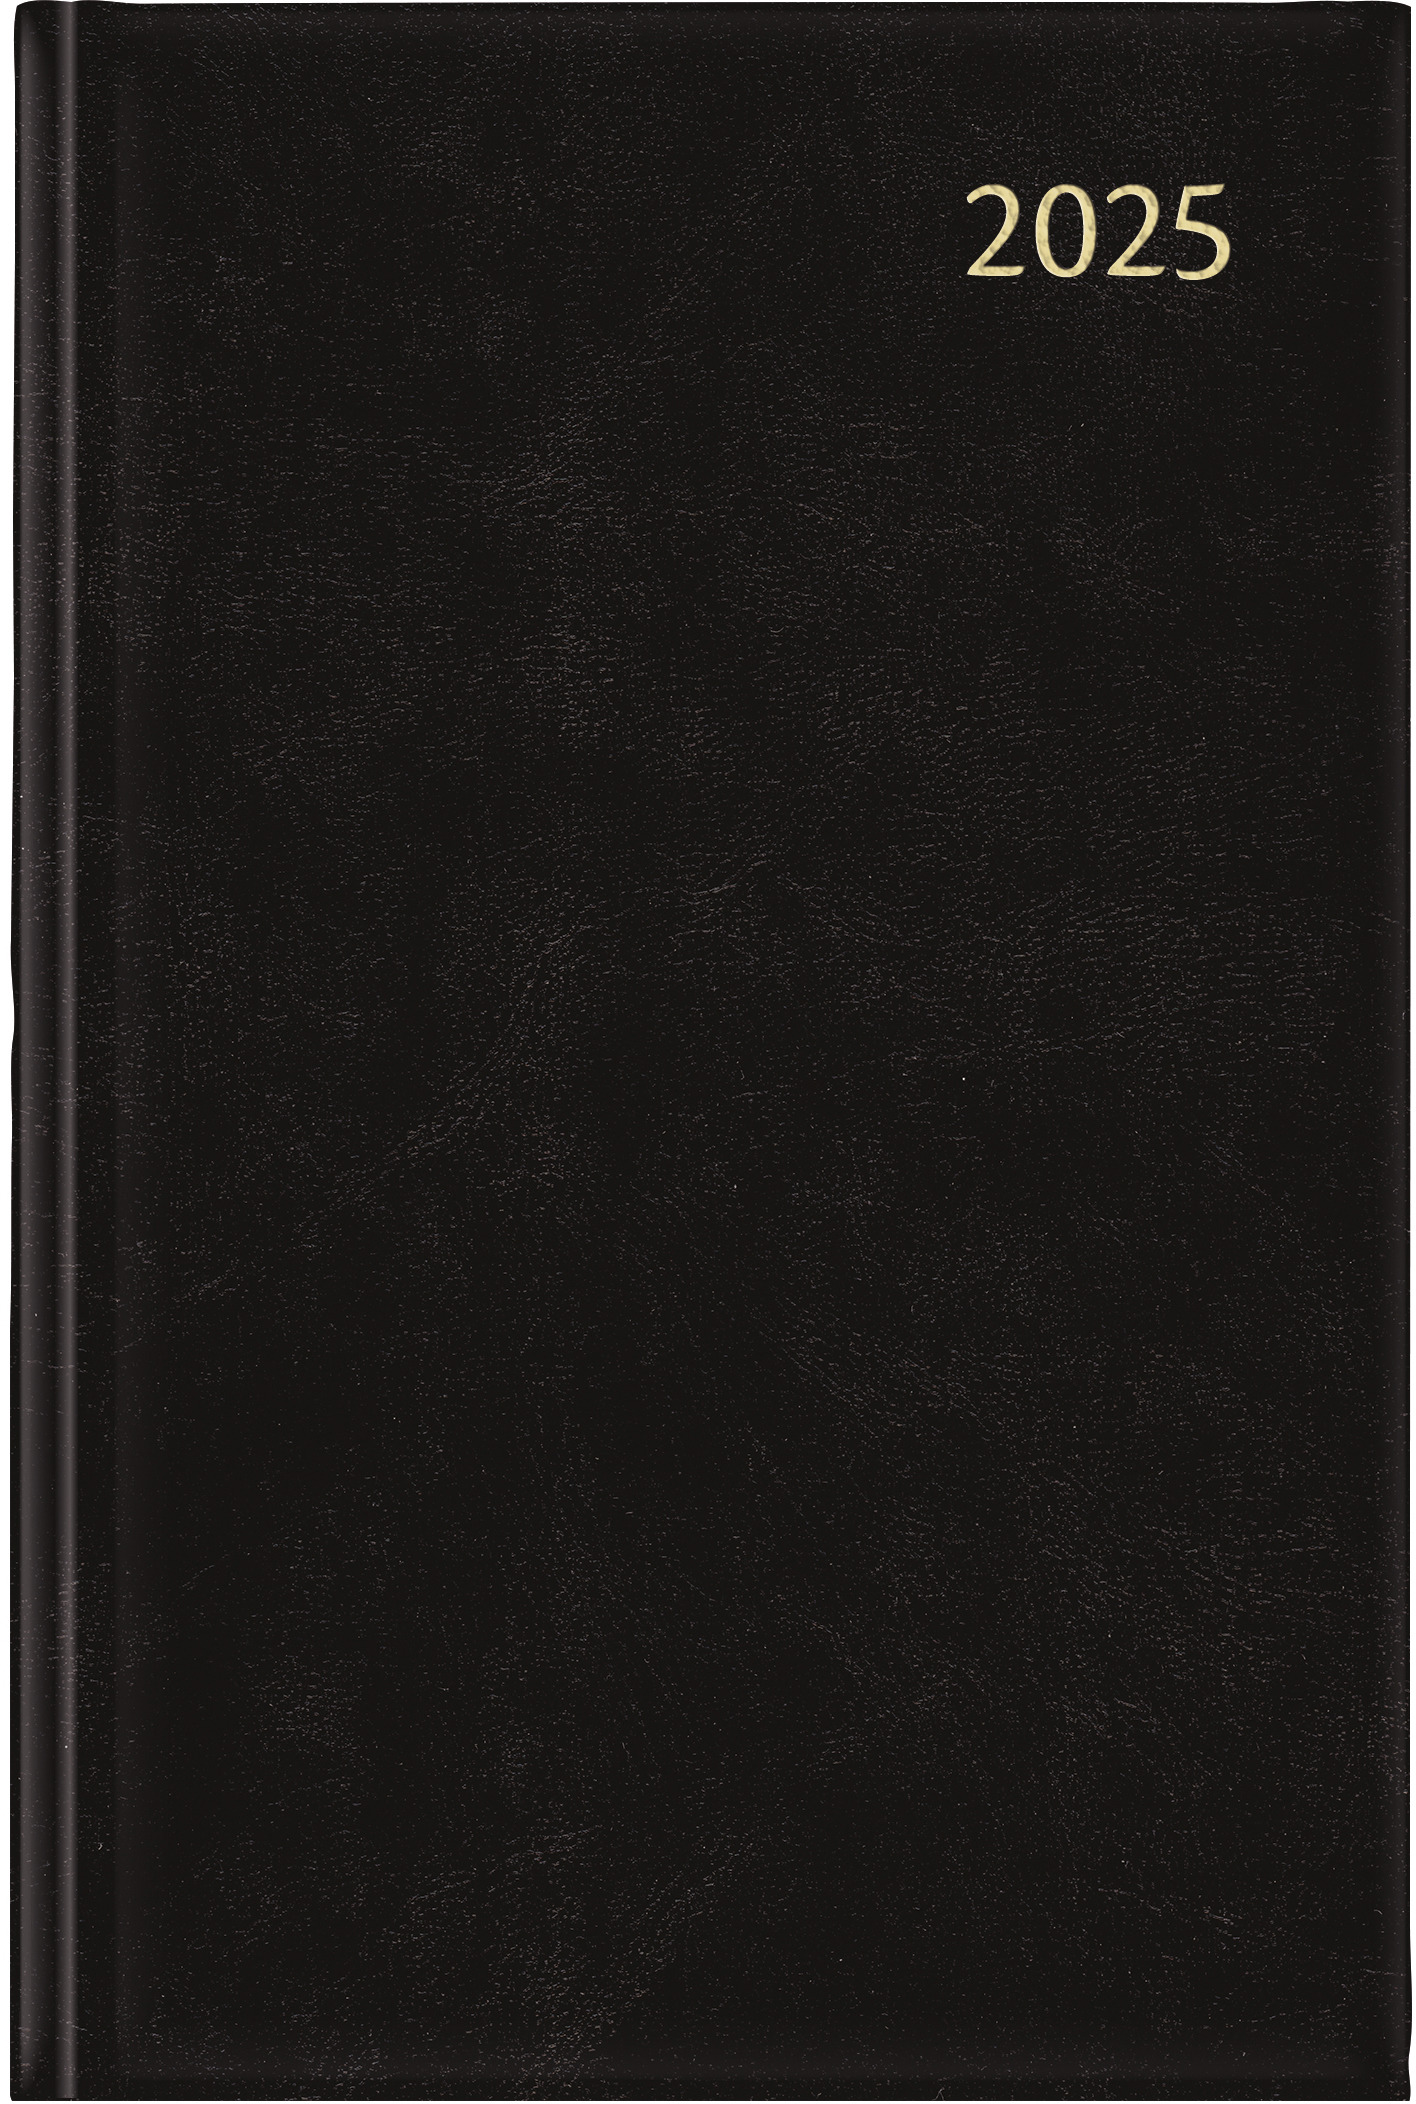 AURORA Agenda Balacron Folio 2025 FA111Z 2T/1S schwarz ML 14x21cm